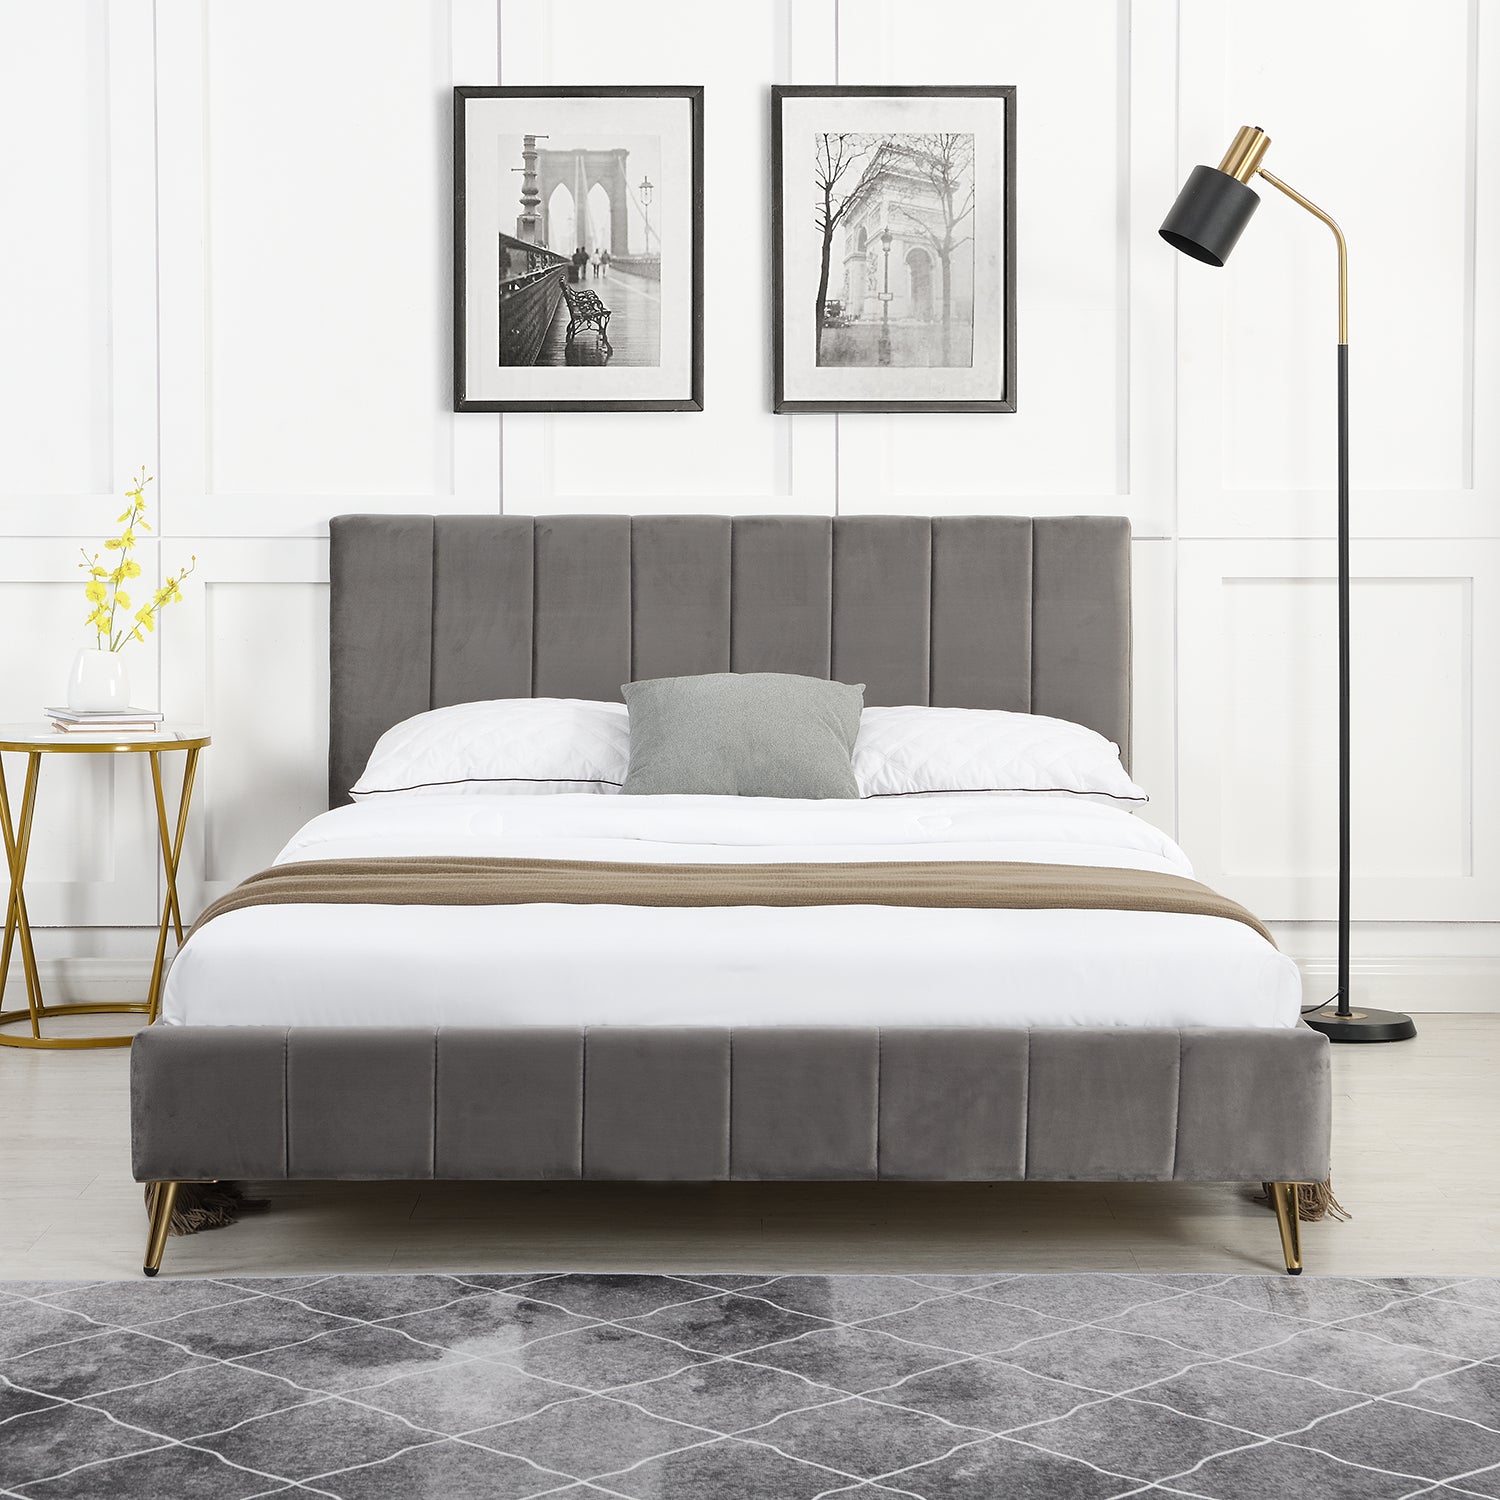 Sylvie Velvet Upholstered Bed Frame With Golden Chrome Legs 2 6620633792563